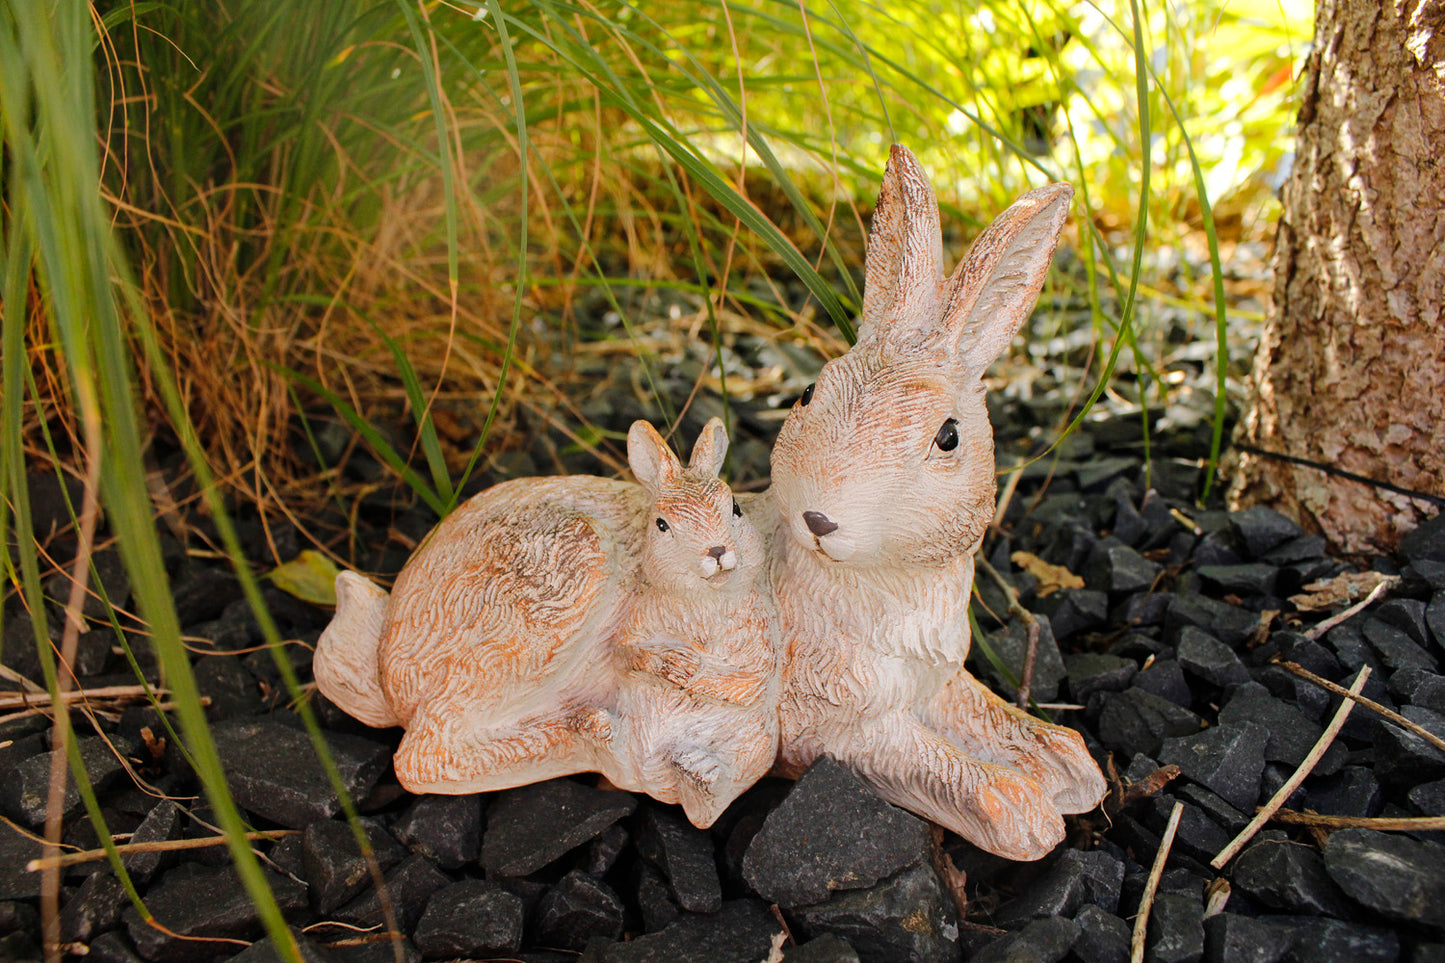 Gartenfigur Kaninchen Familie TF203 21x 15 cm Tierfigur